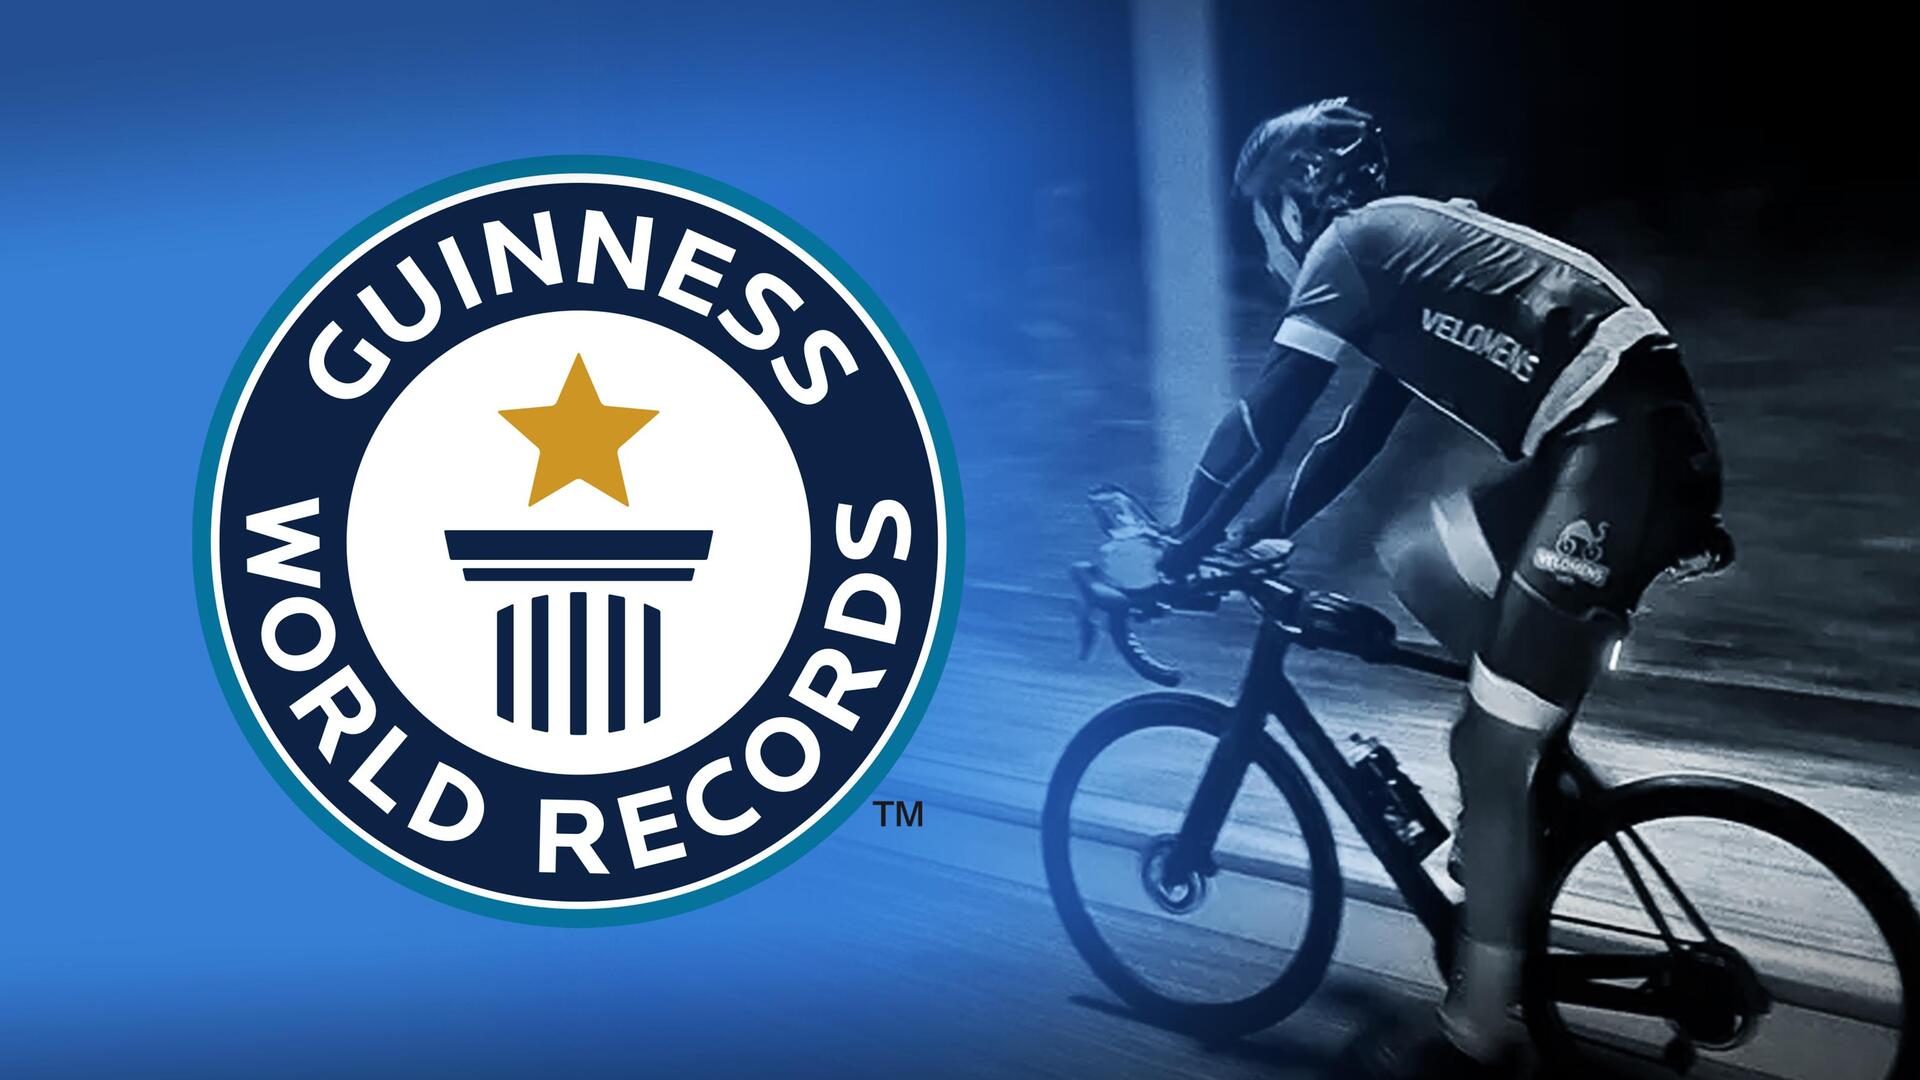 व्यक्ति ने 24 घंटे में साइकिल से 9 देशों का सफर किया तय, बना विश्व रिकॉर्ड